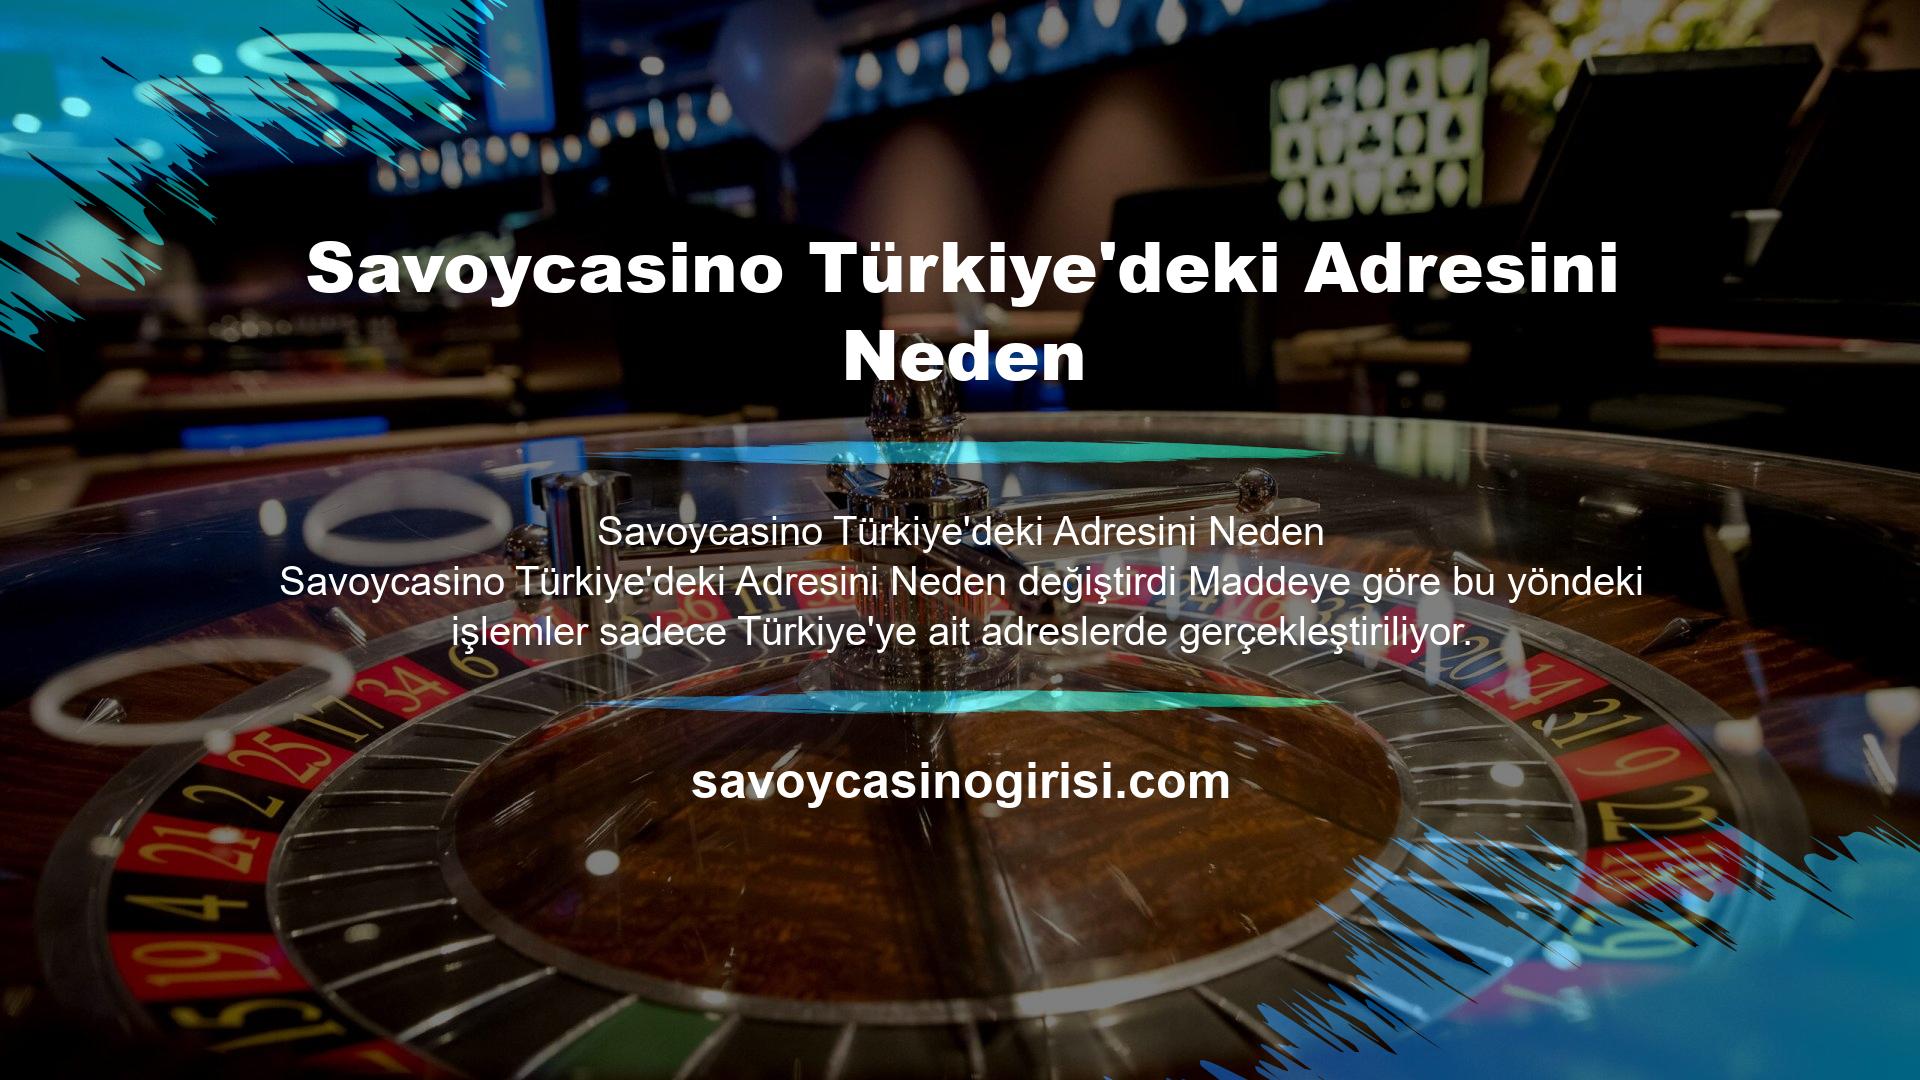 Peki Savoycasino Türkiye'deki adresini neden değiştirdi? Şirket Türkiye'de yetkili değildir